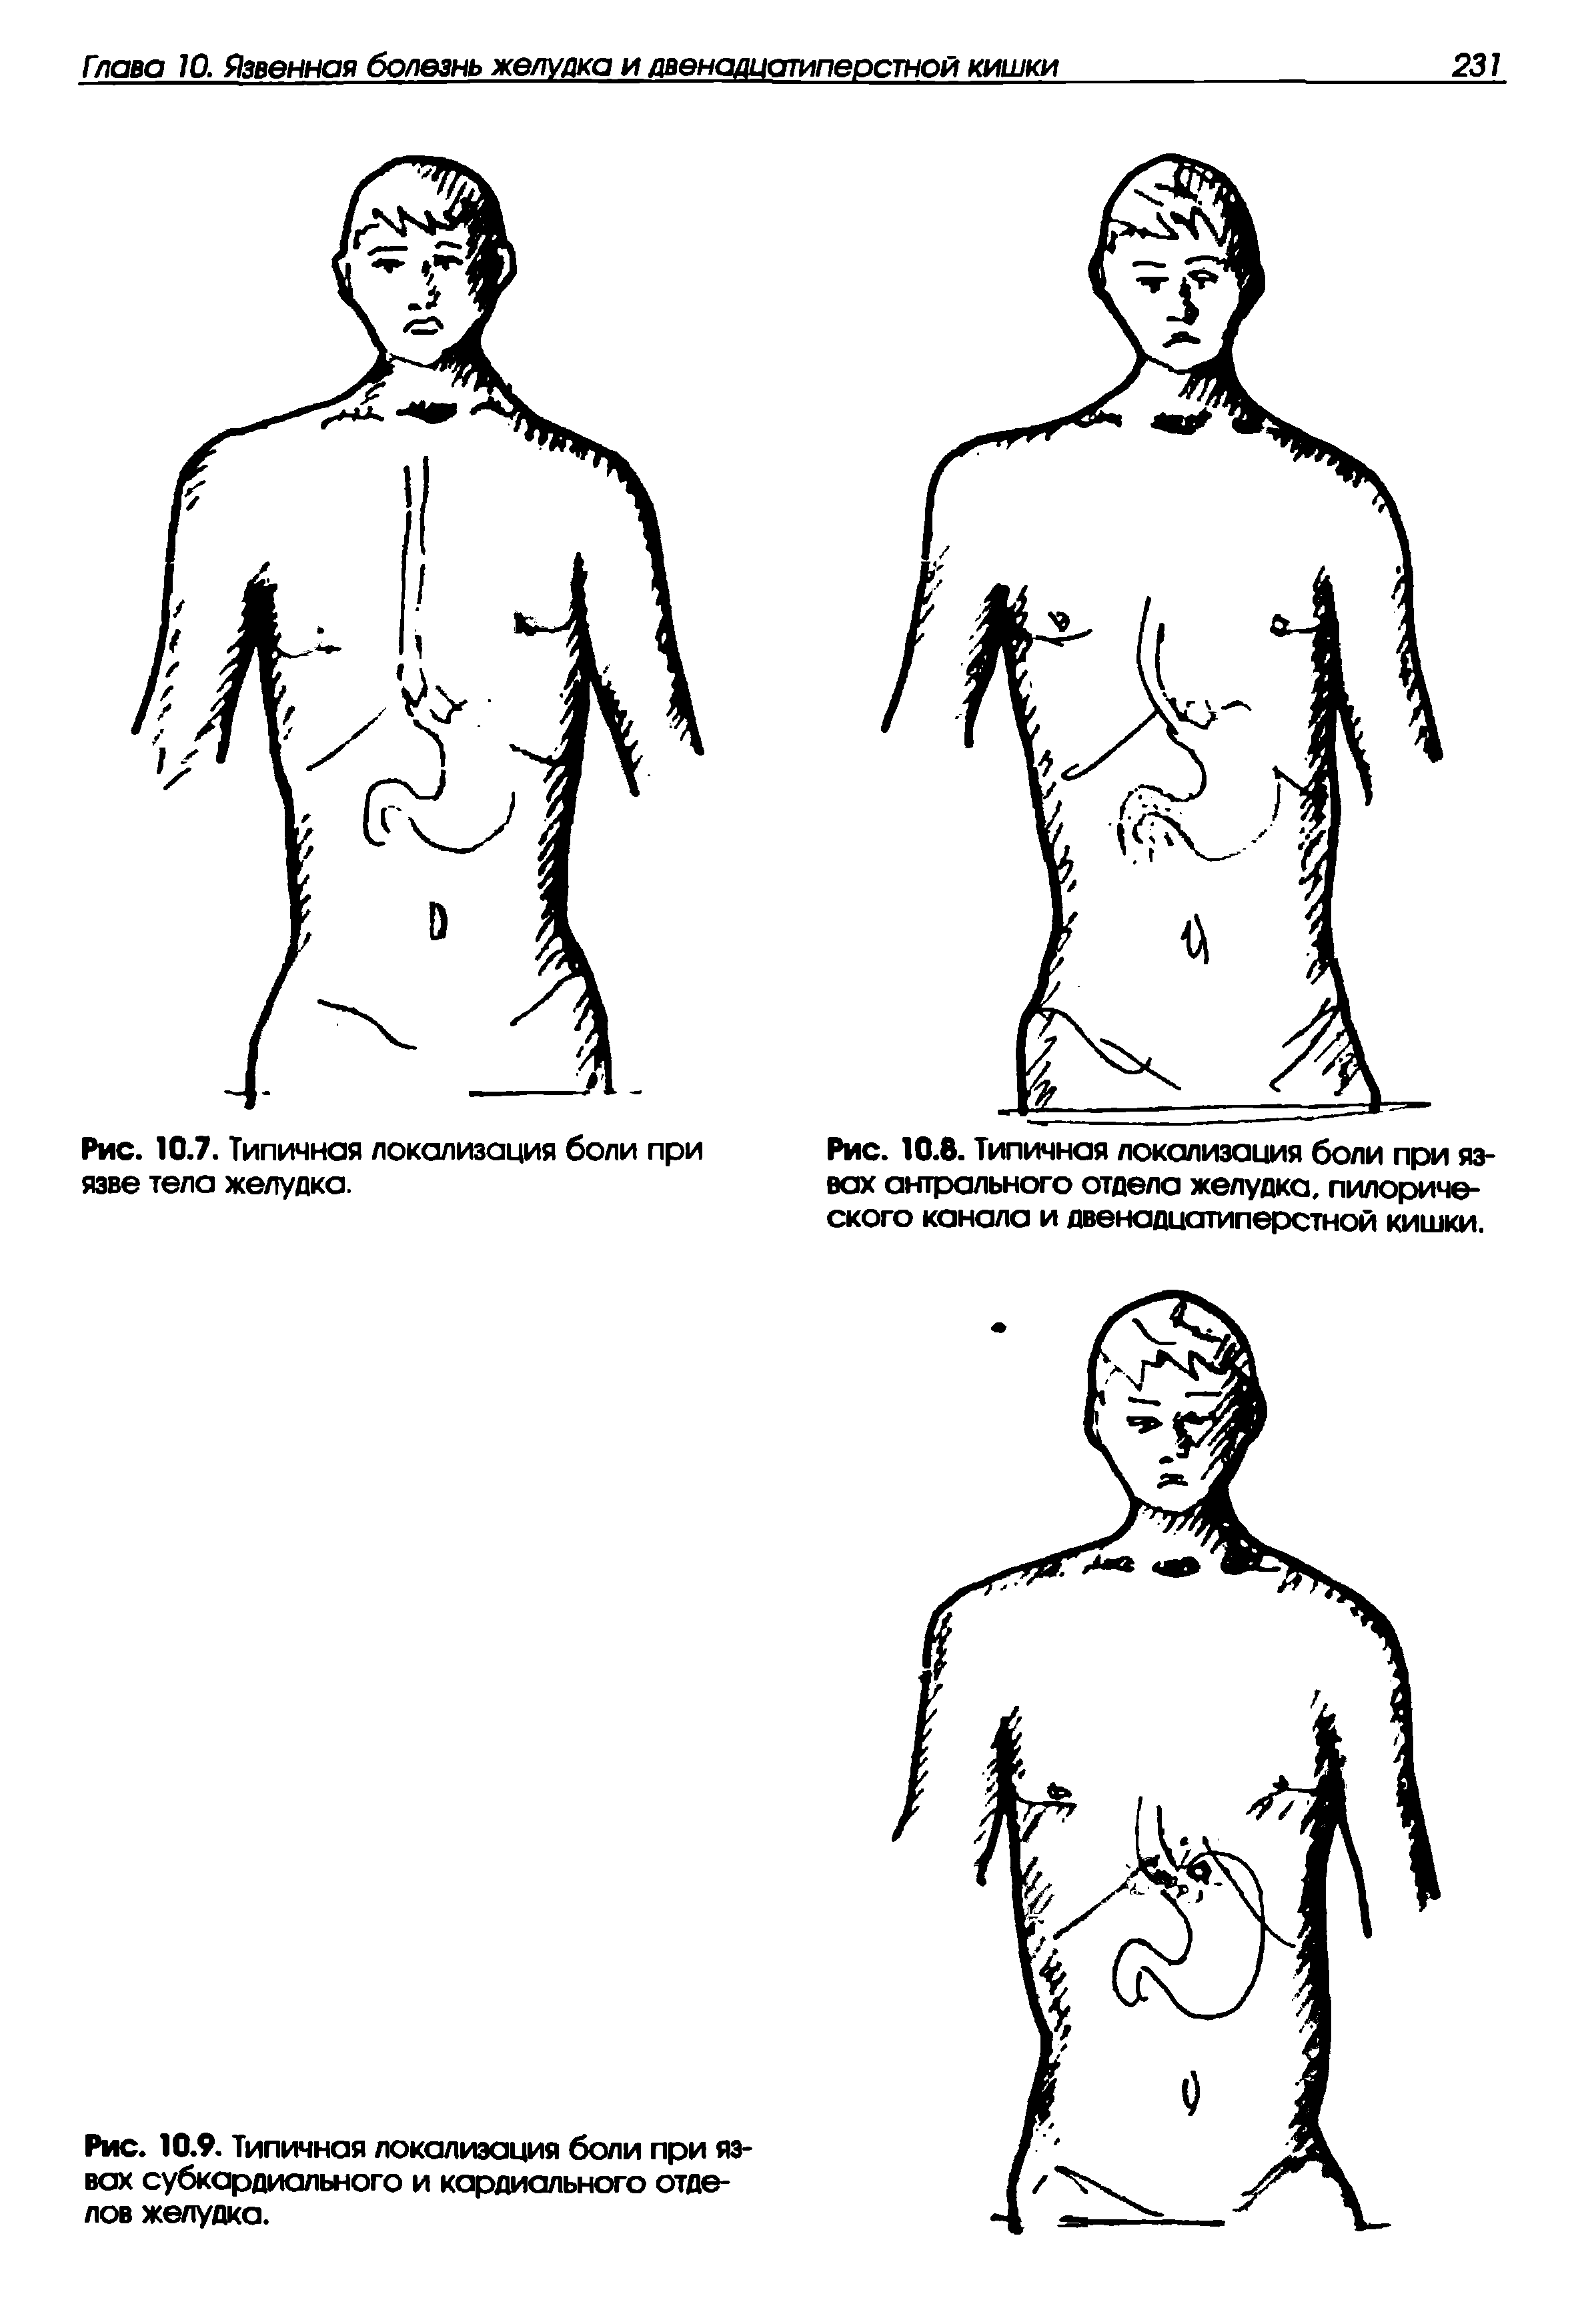 Рис. 10.8. Типичная локализация боли при язвах антрального отдела желудка, пилорического канала и двенадцатиперстной кишки.